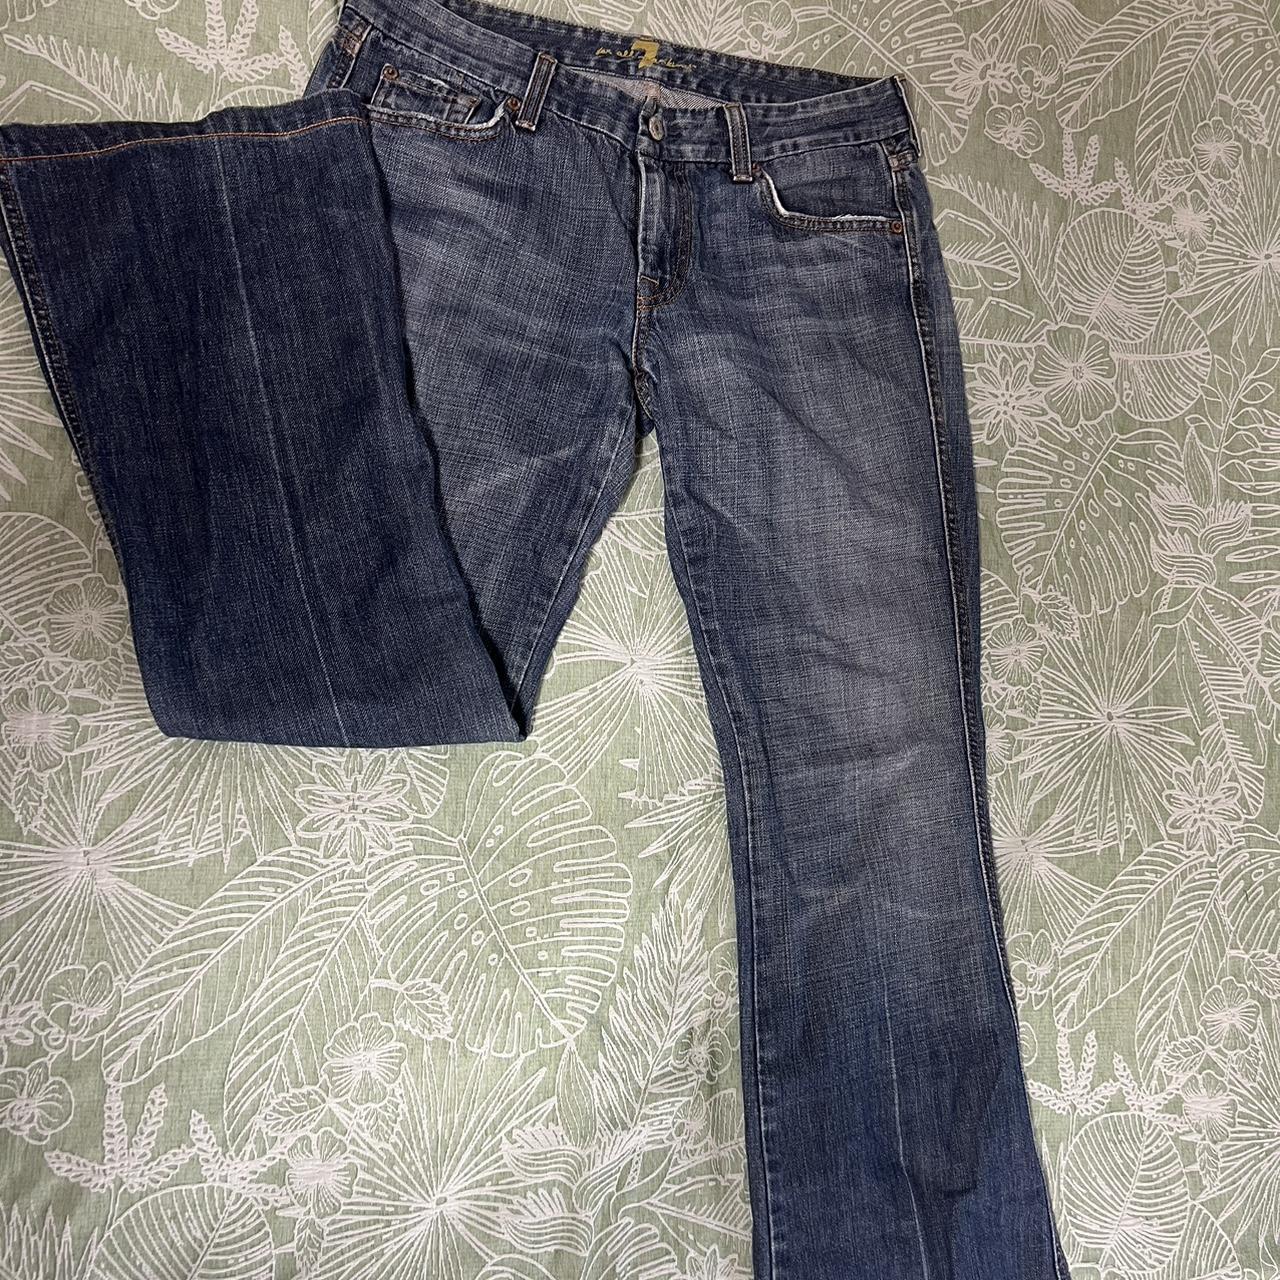 Vintage jeans Straight leg low rise Size 10 - Depop